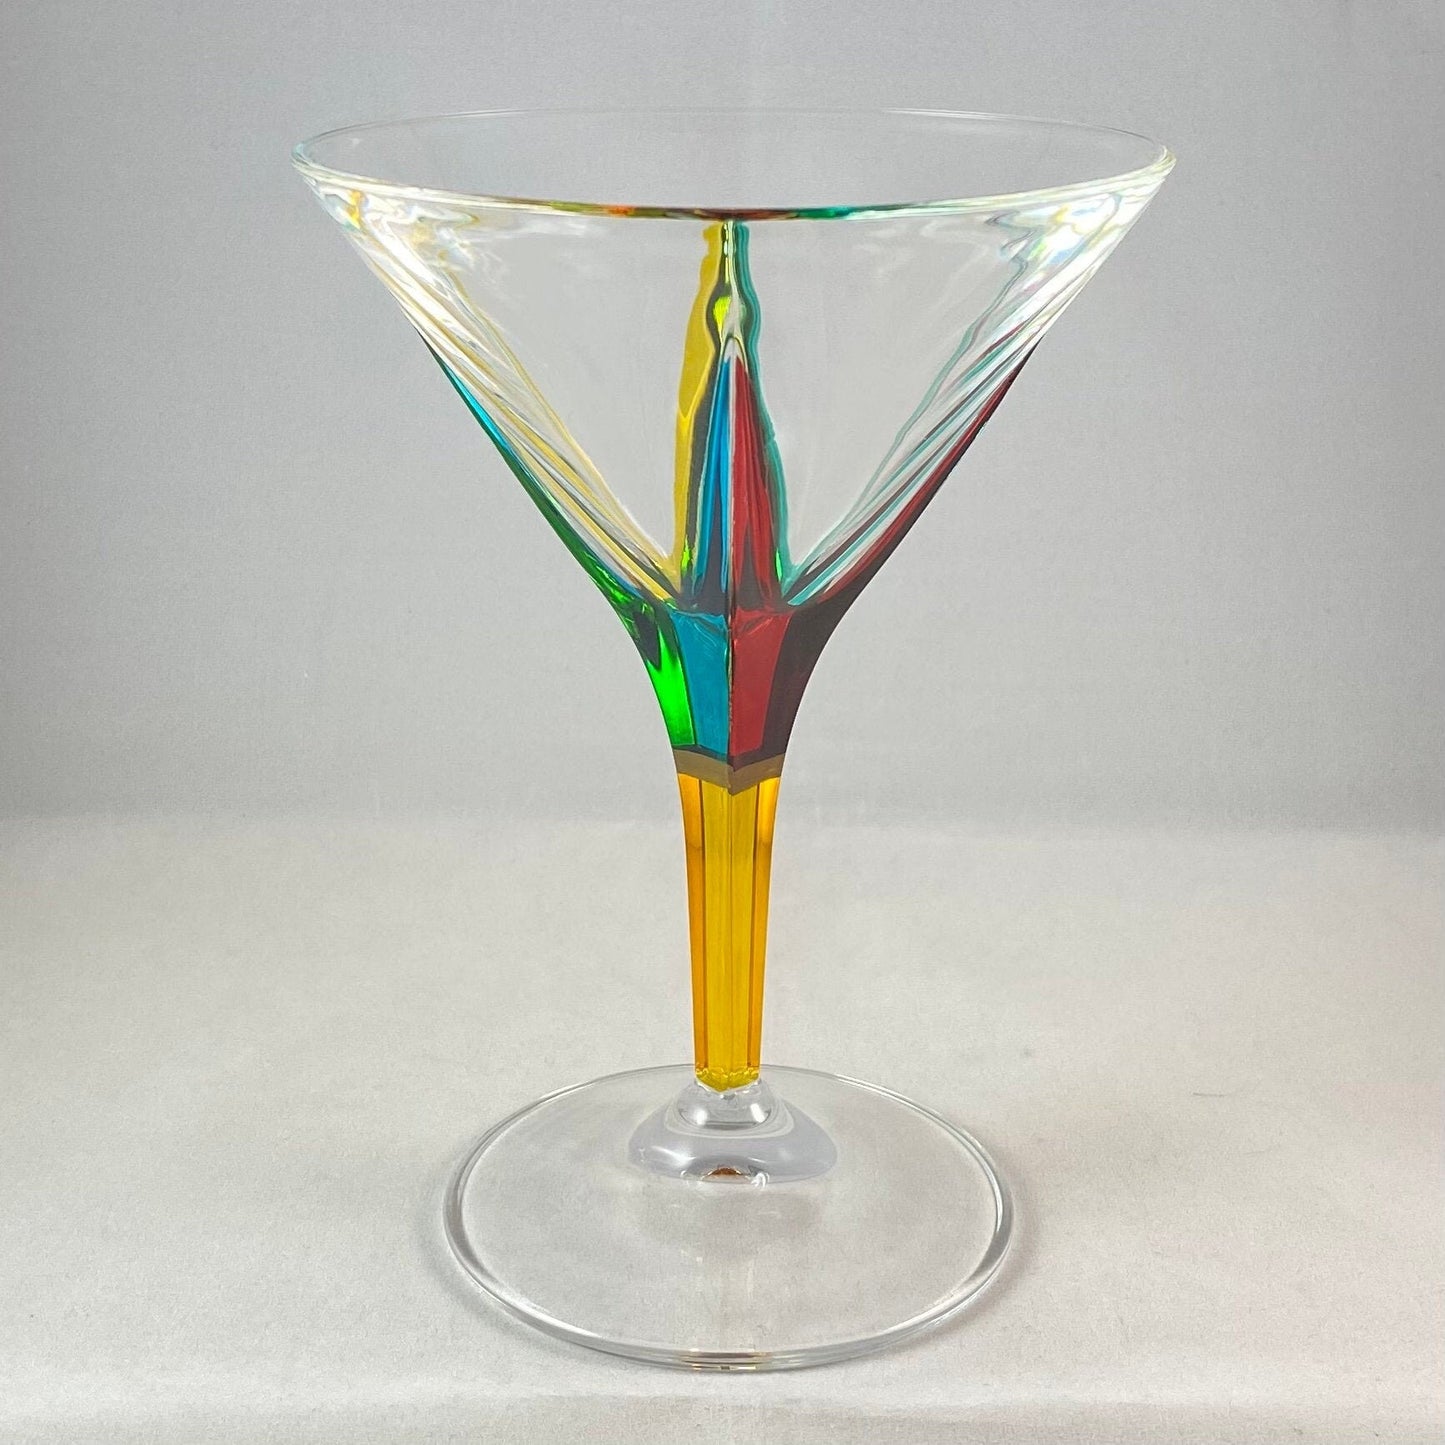 Yellow Stem Venetian Glass Martini Glass - Handmade in Italy, Colorful Murano Glass